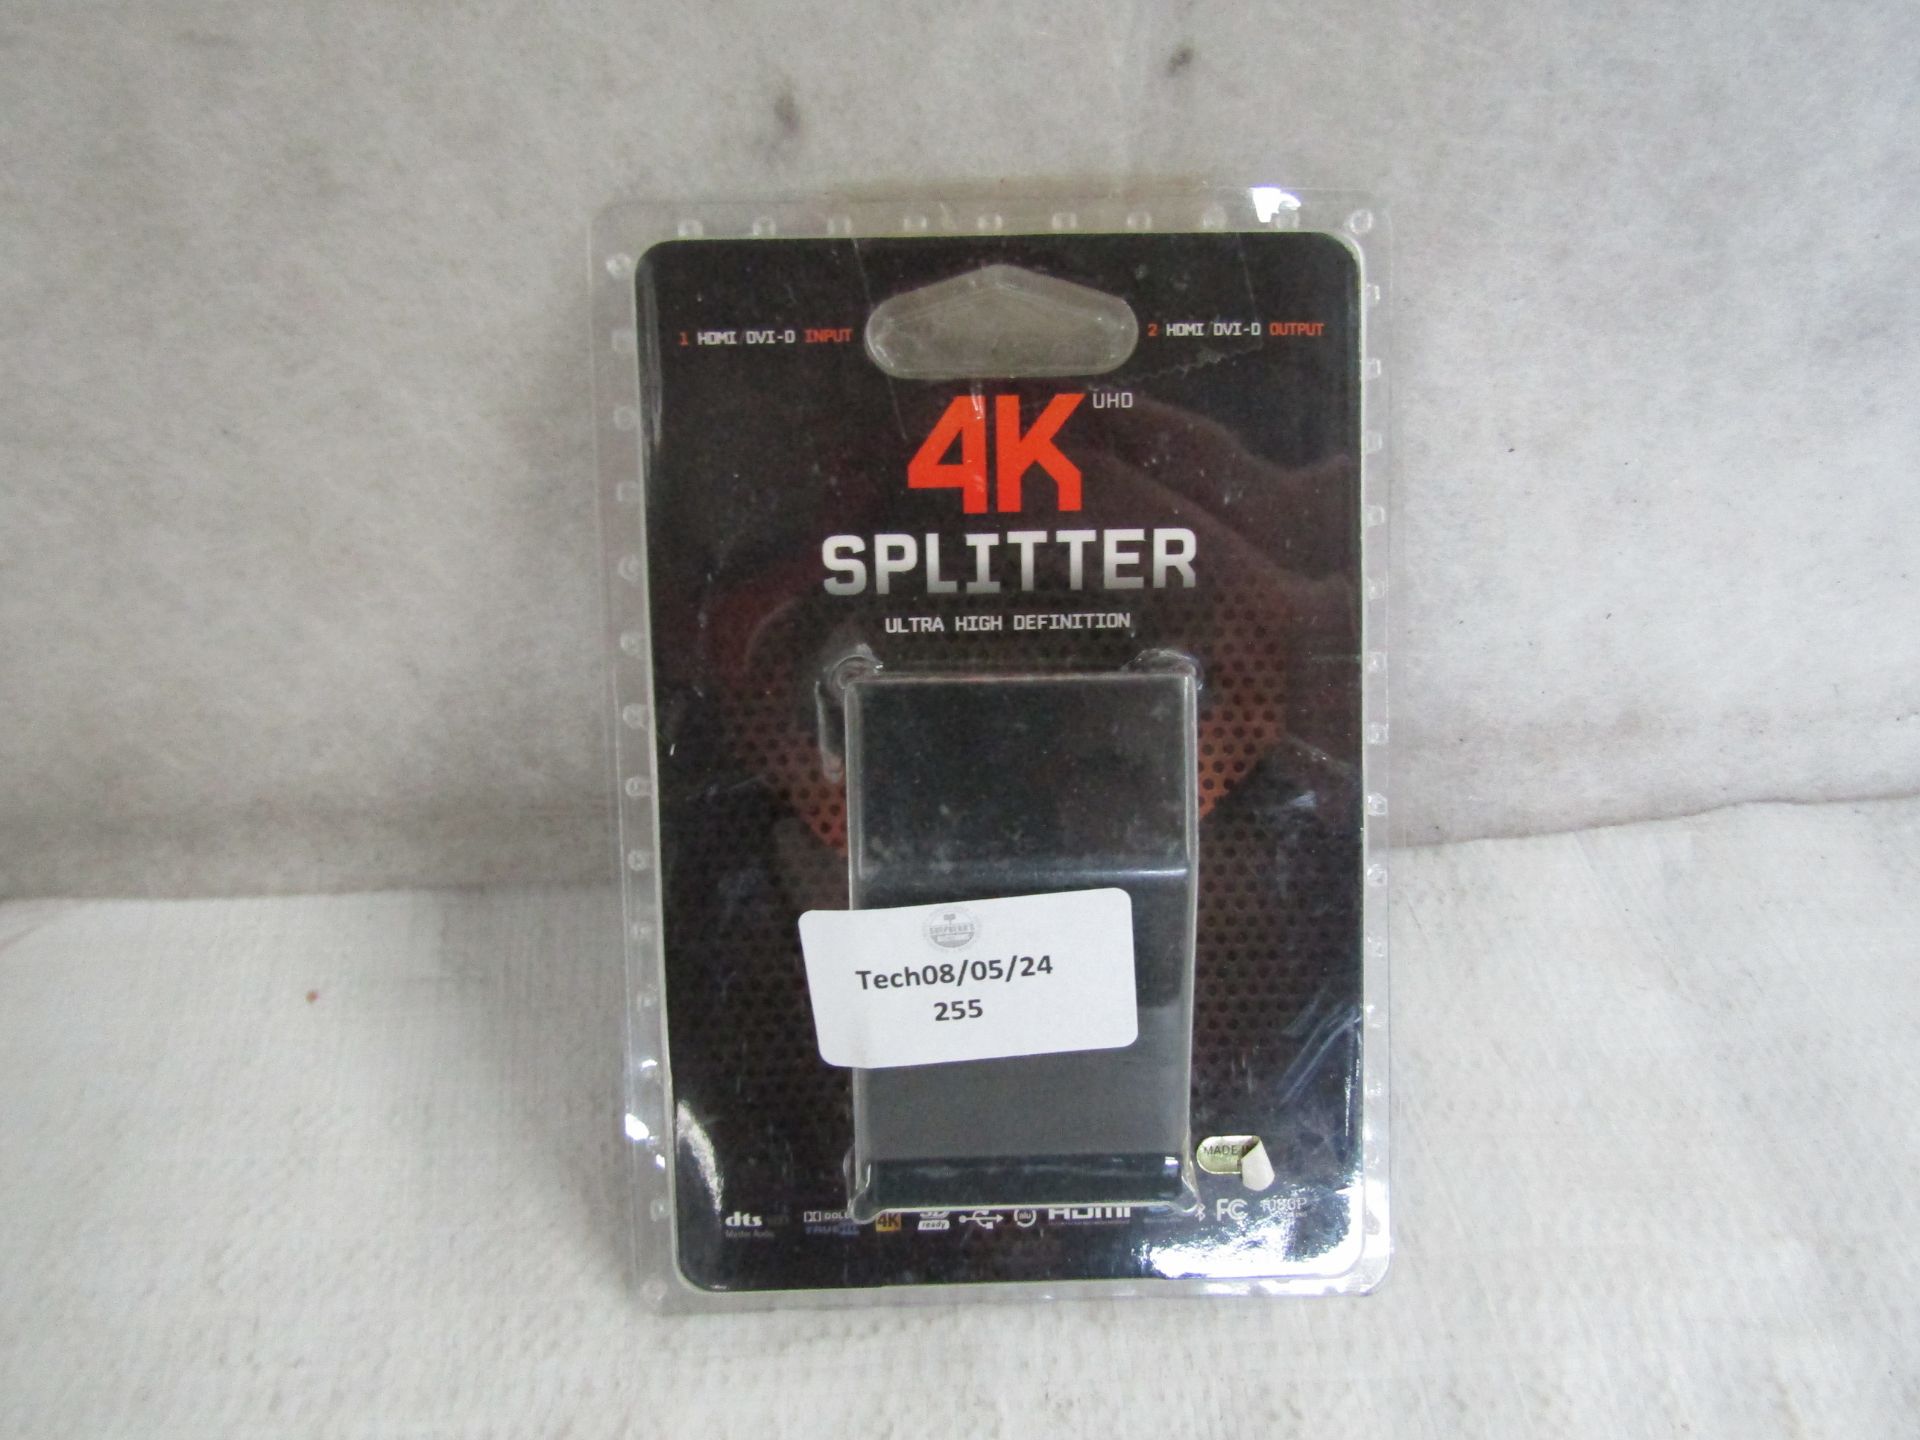 4K UHD Splitter, Unchecked & Packaged.